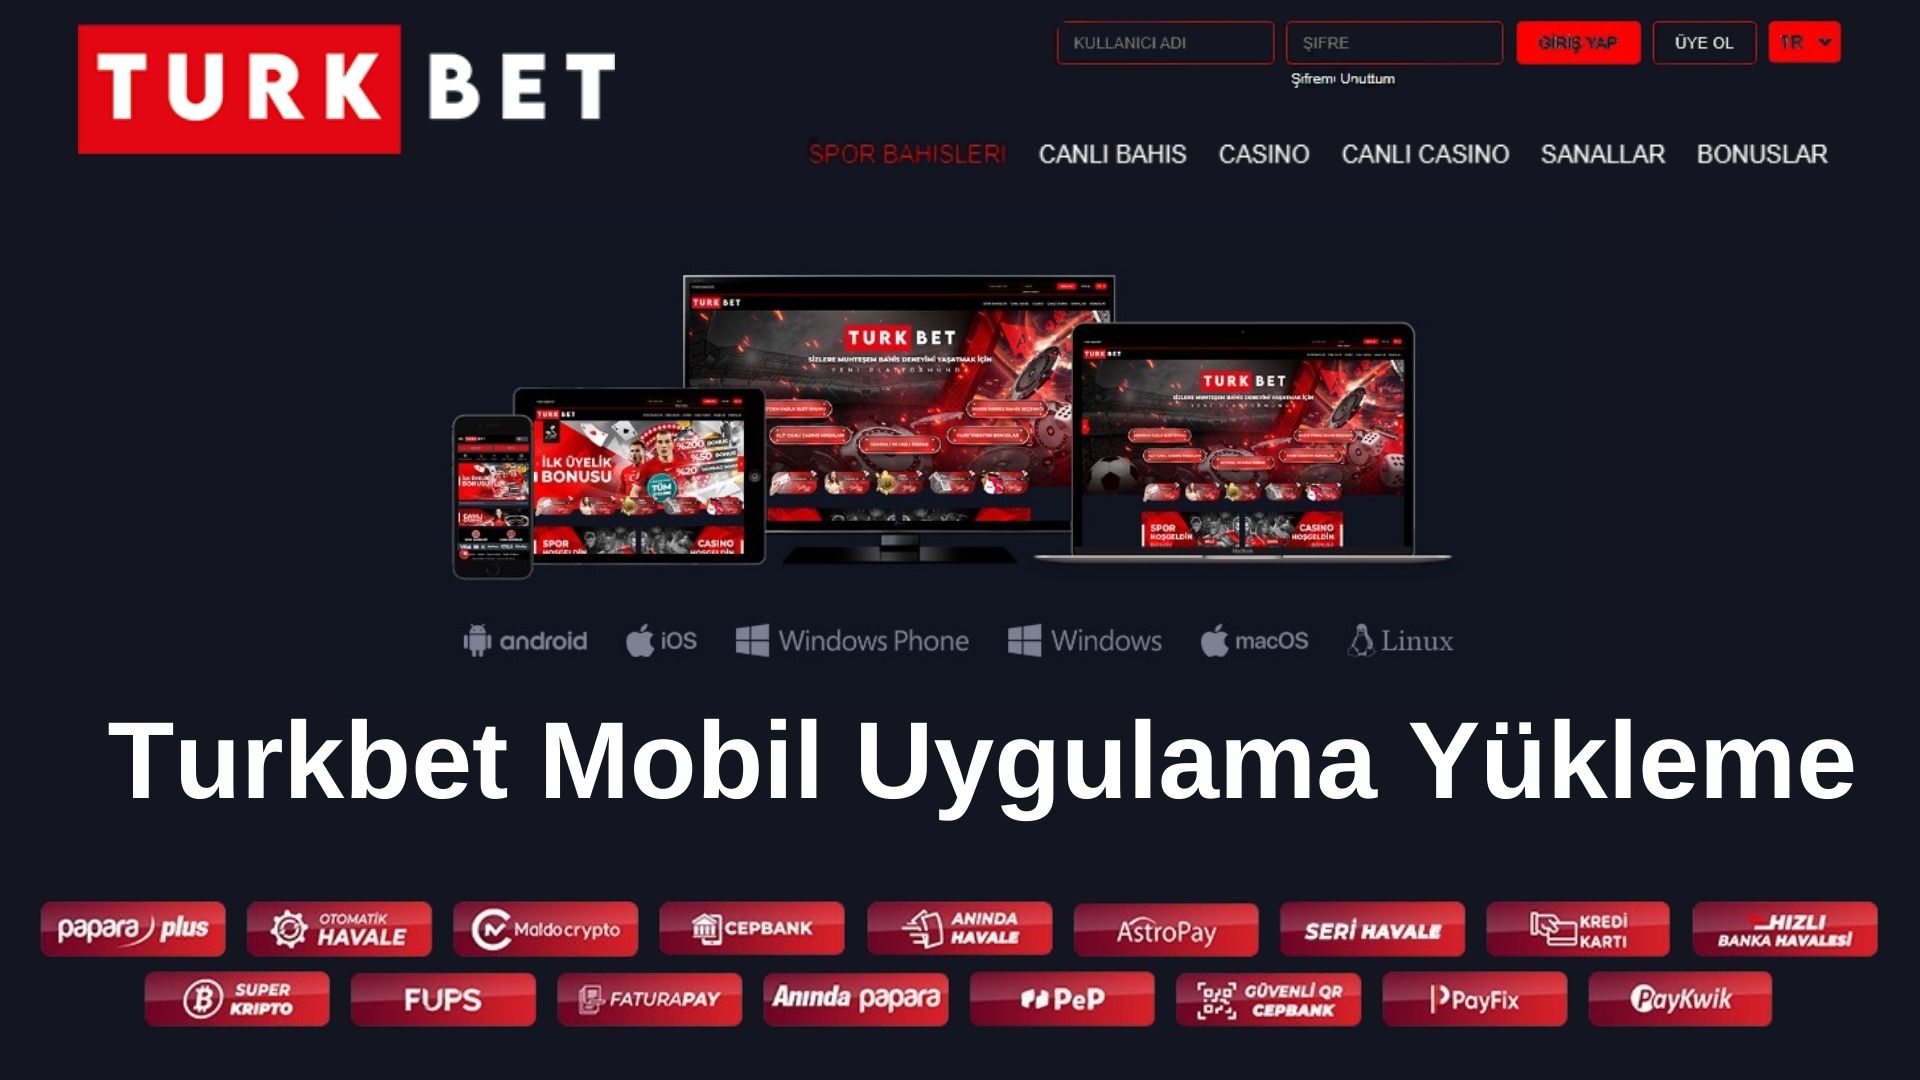 Turkbet Mobil Uygulama Yükleme